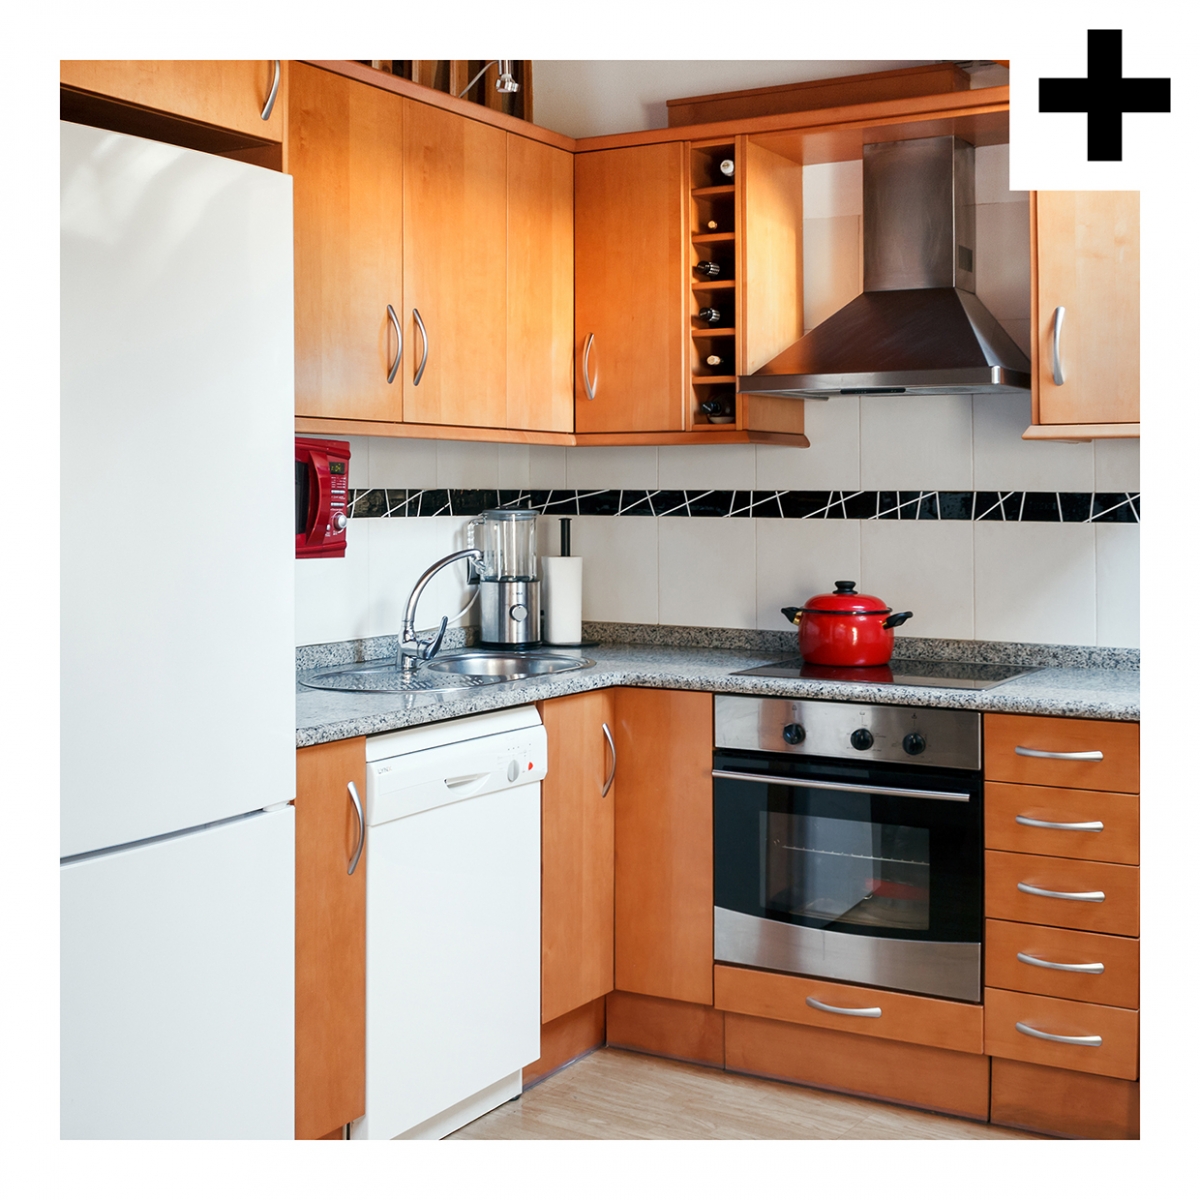 Imagen en la que se ve una cocina compuesta de frigorífico, lavavajillas, campana, horno, fregadero y placa vitrocerámica